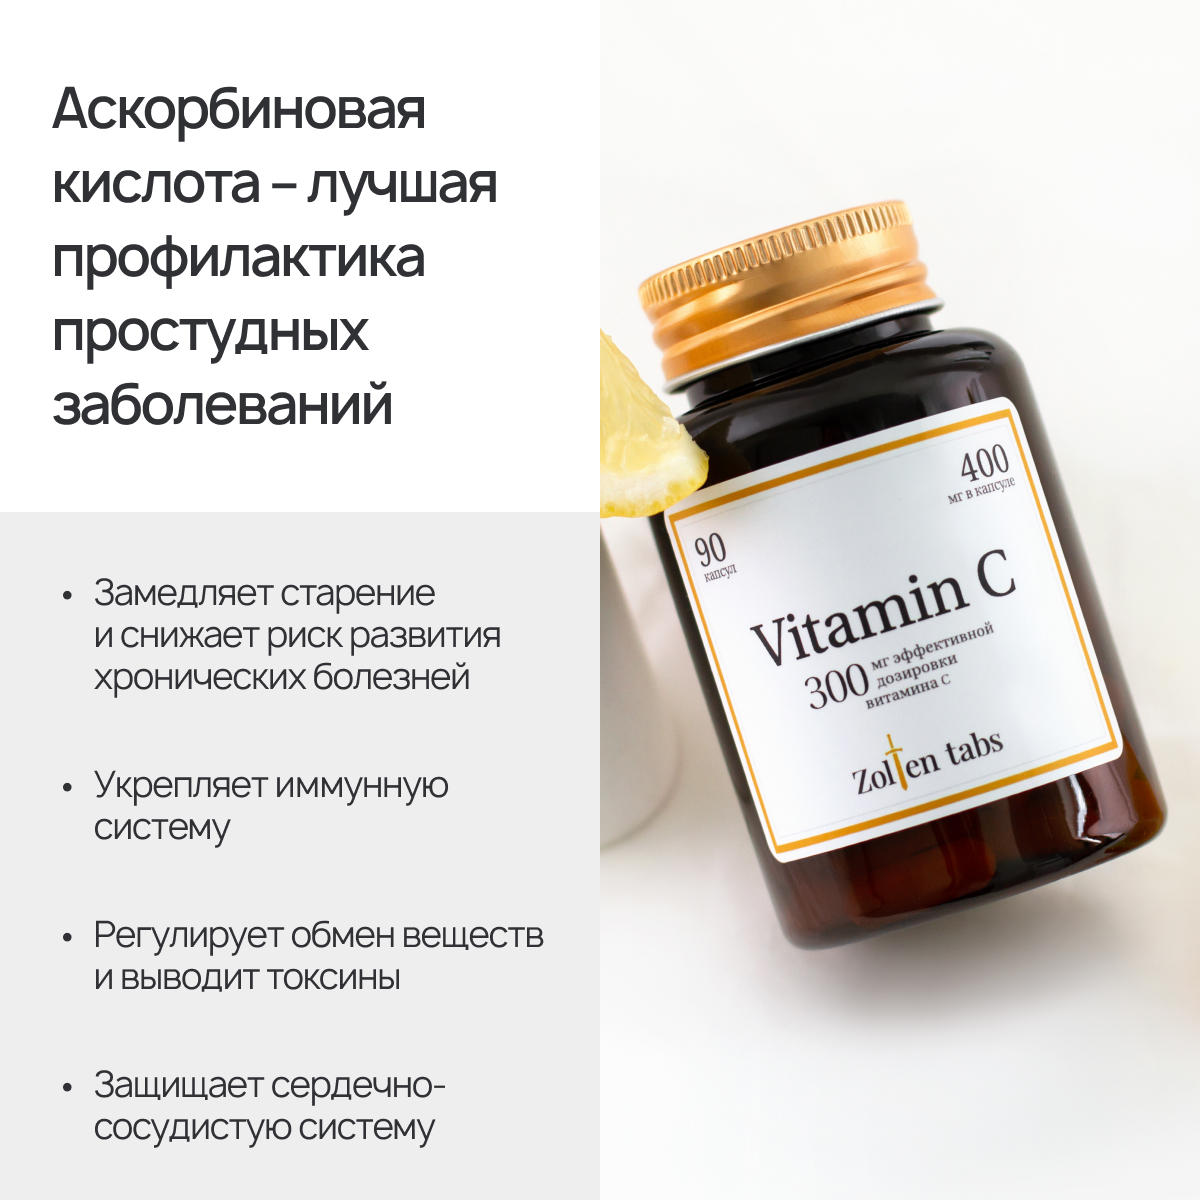 Биологически активная добавка Zolten Tabs витамин С аскорбиновая кислота витаминно-минеральный комплекс 90 капсул - фото 2